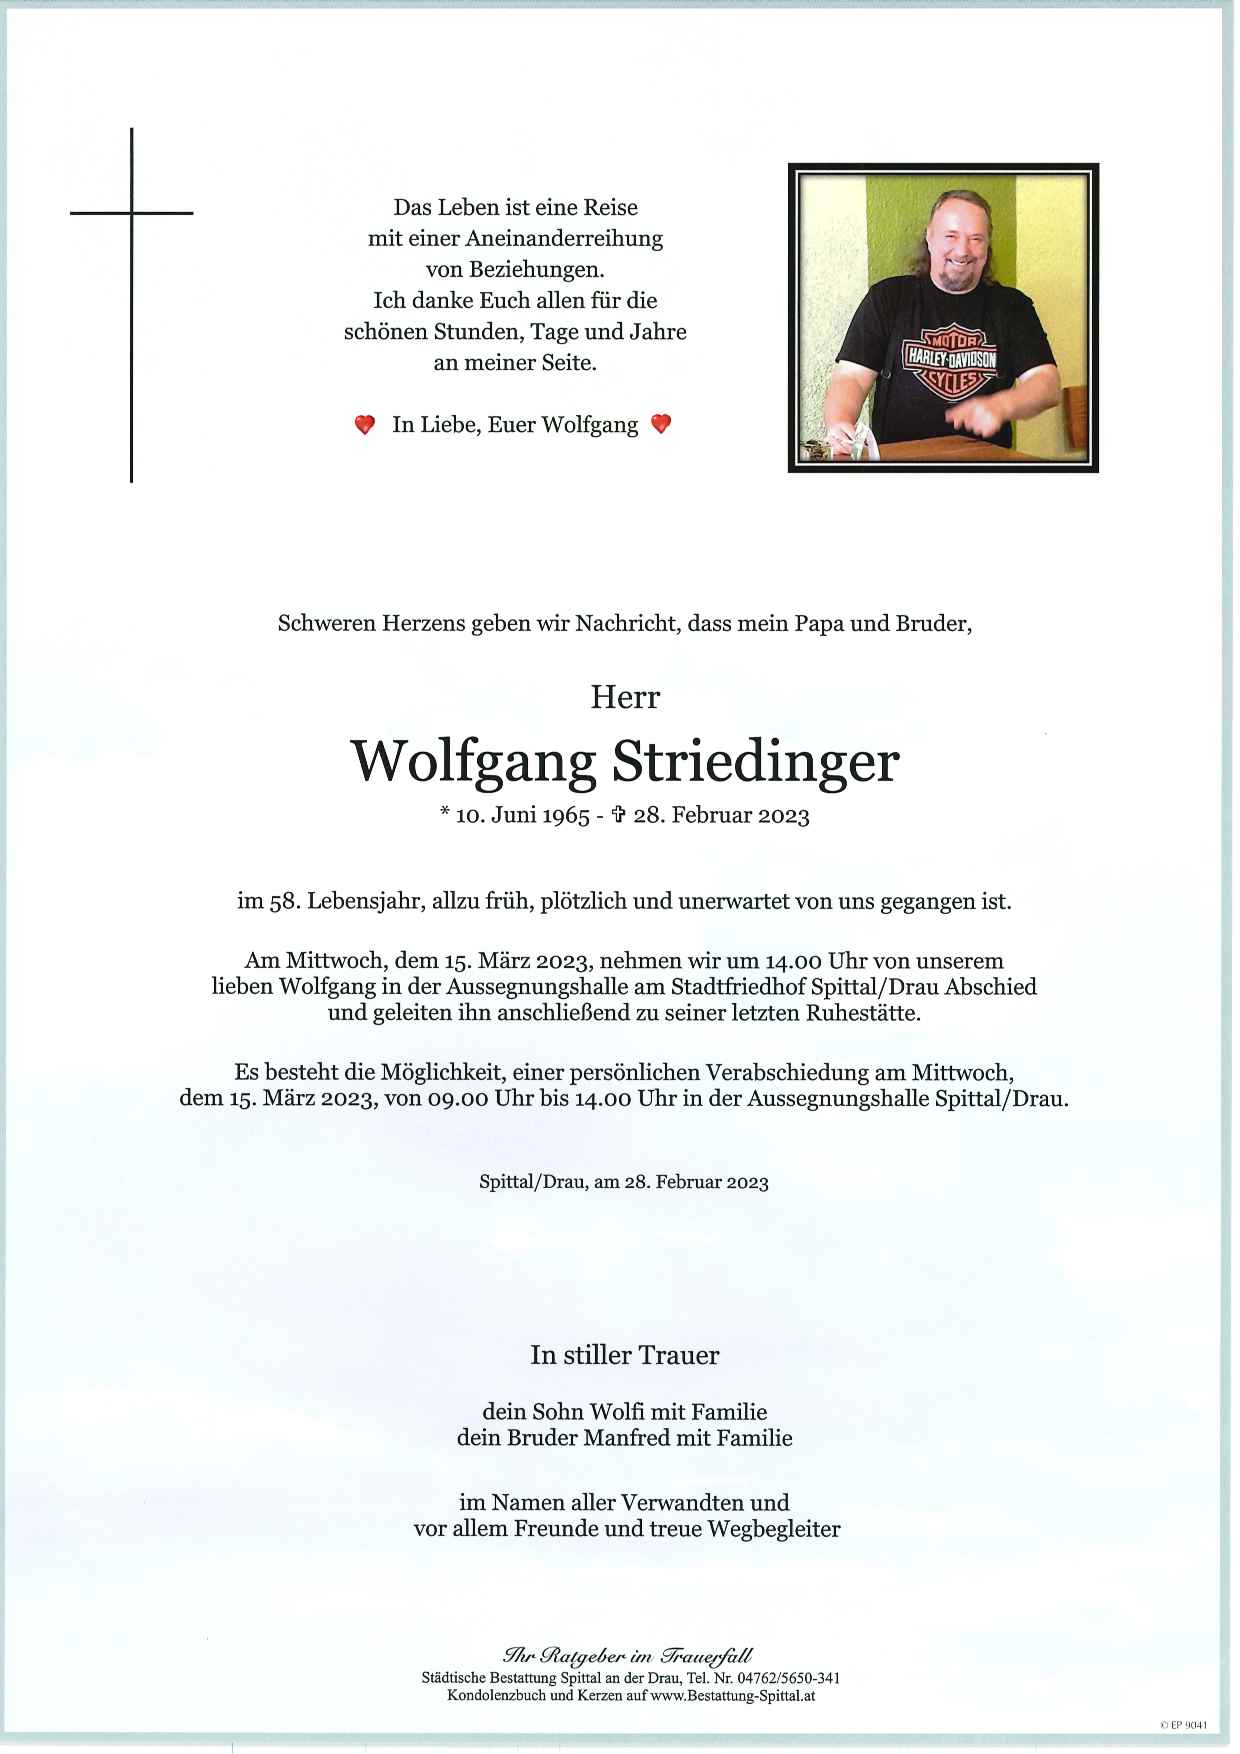 Wolfgang Striedinger